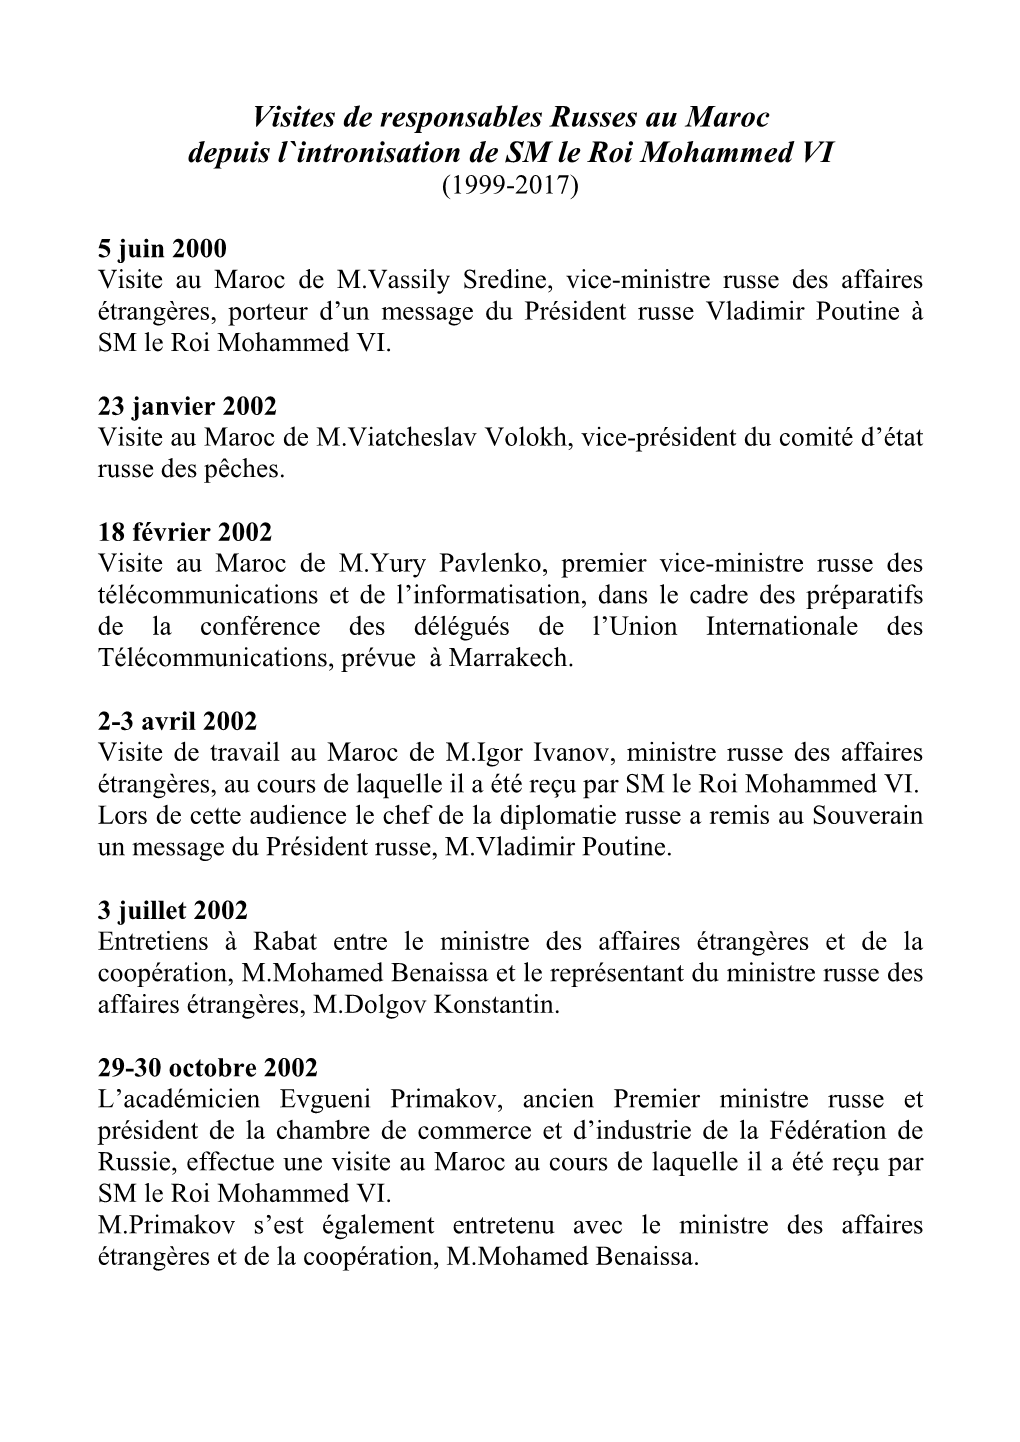 Visites De Responsables Russes Au Maroc Depuis L`Intronisation De SM Le Roi Mohammed VI (1999-2017)